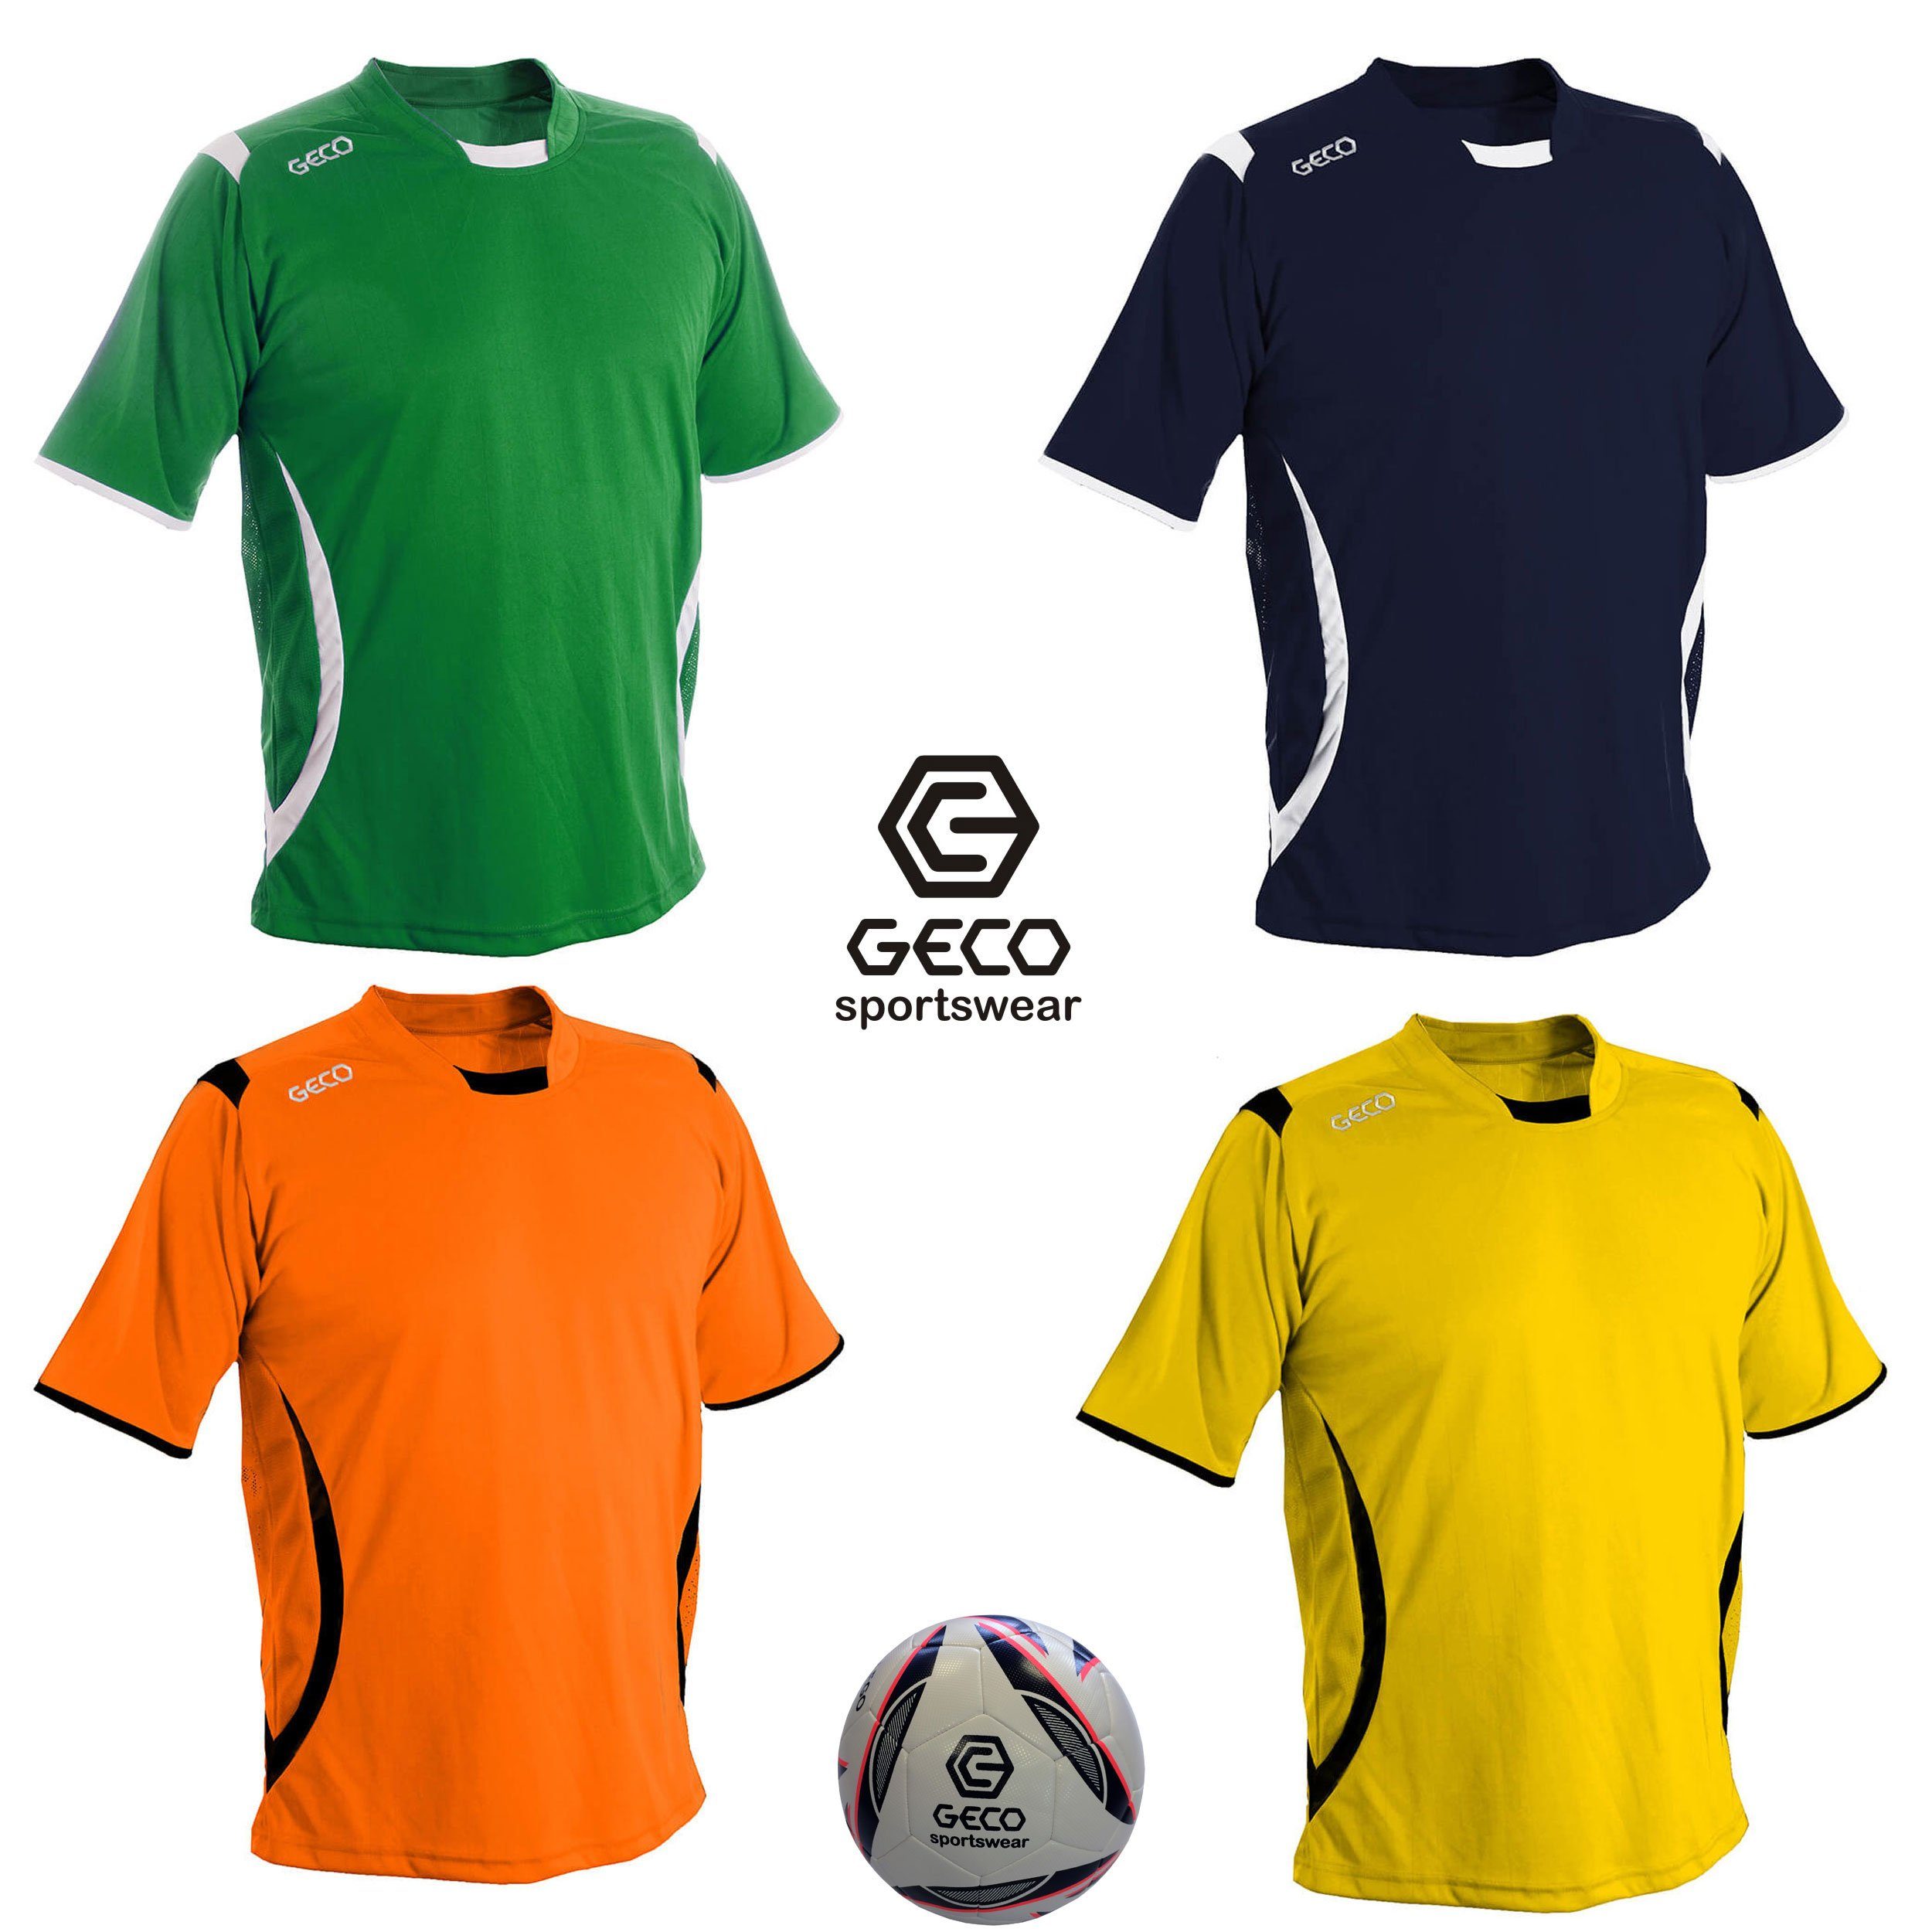 Fußballtrikot Trikot Einsätze Sportswear grün/weiß Levante Geco Mesh Fußballtrikot Fußball seitliche zweifarbig Geco kurzarm